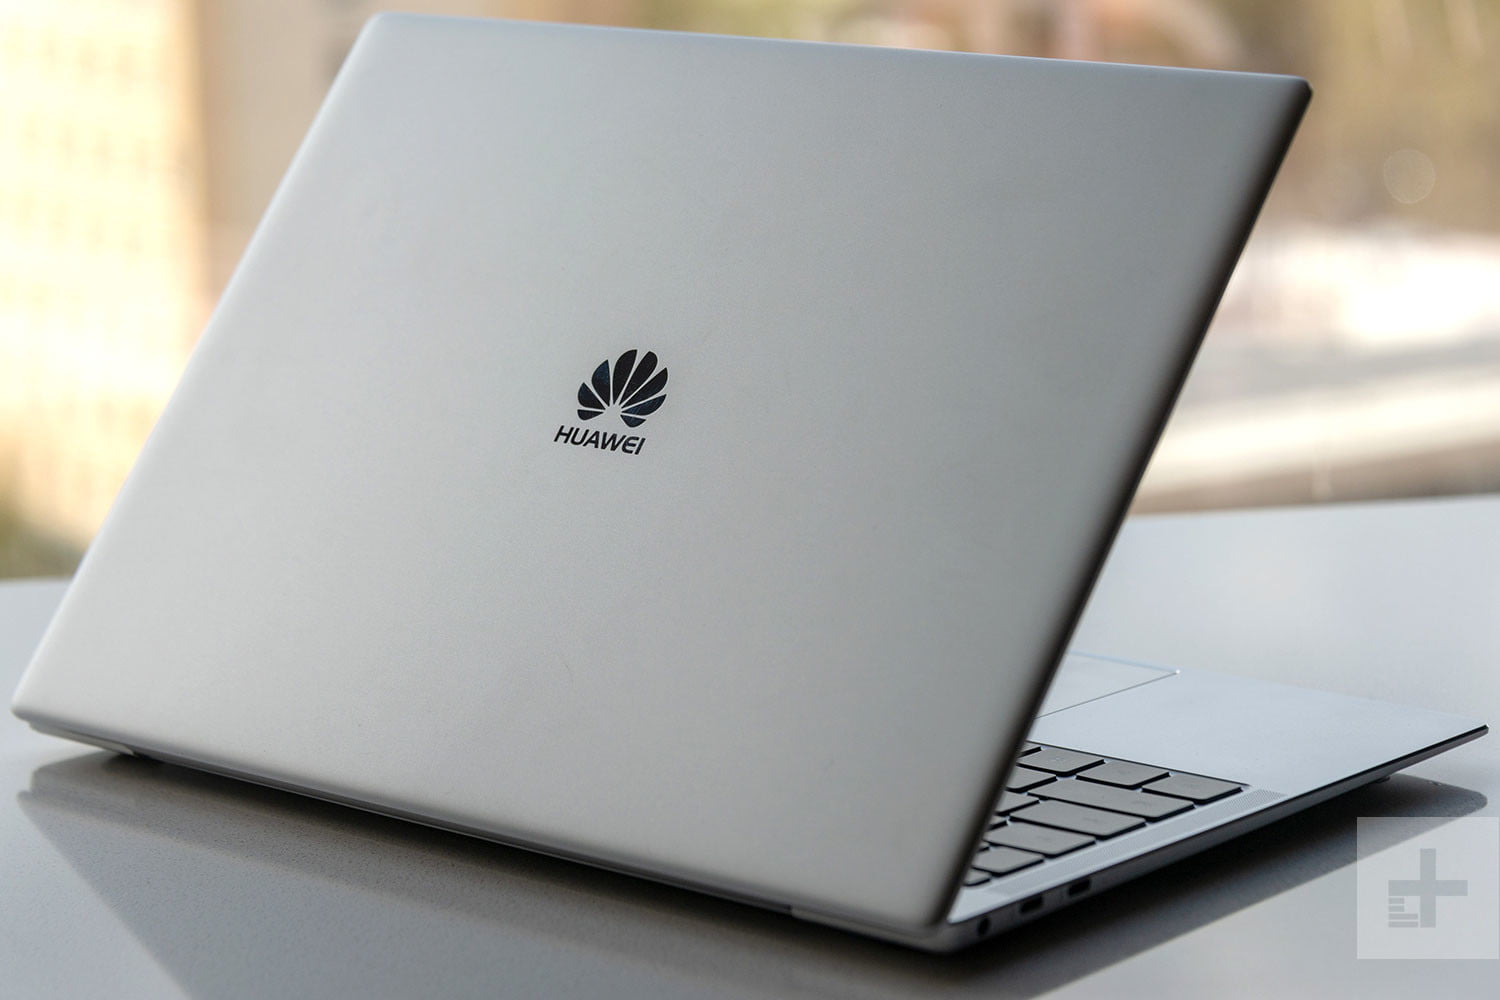 Huawei’s laptop